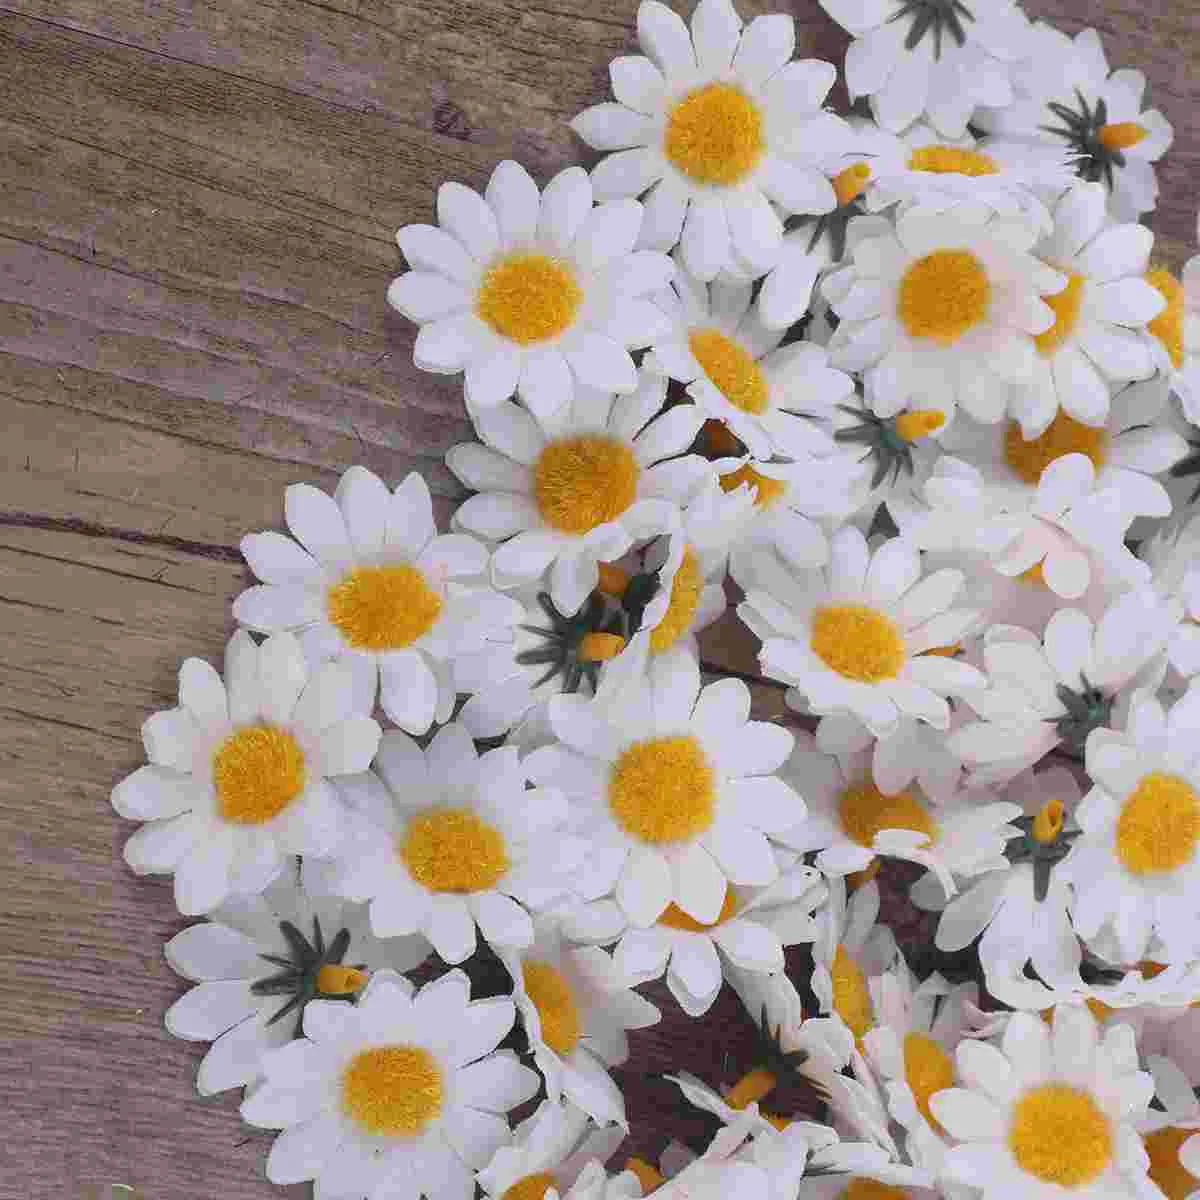 100 adet Yapay Papatya Kumaş Papatya Çiçek Yapay Papatya Krizantem Papatya Çiçekler Düğün Ev Dekorasyon için (Beyaz ) Görüntü 5